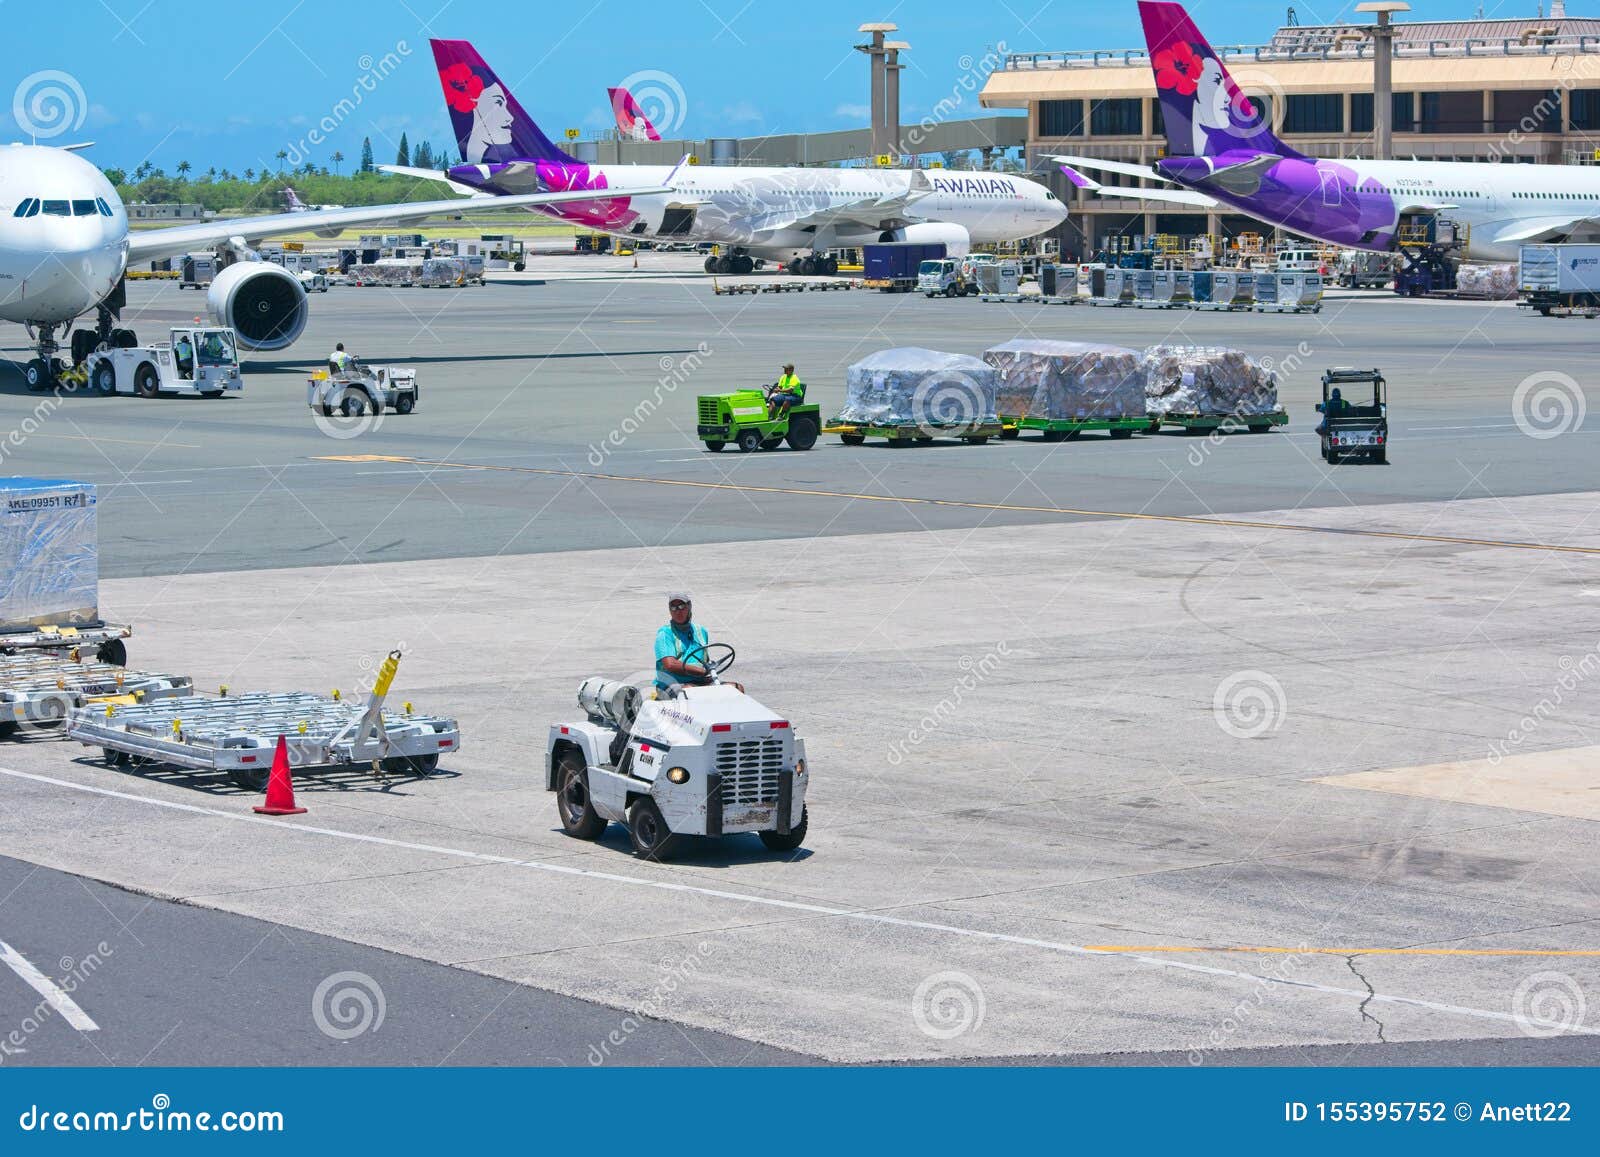 檀香山国际机场珊瑚跑道 库存照片. 图片 包括有 通用, 西南, 国际, 夏威夷, 飞行, 地产, 等候 - 34094632